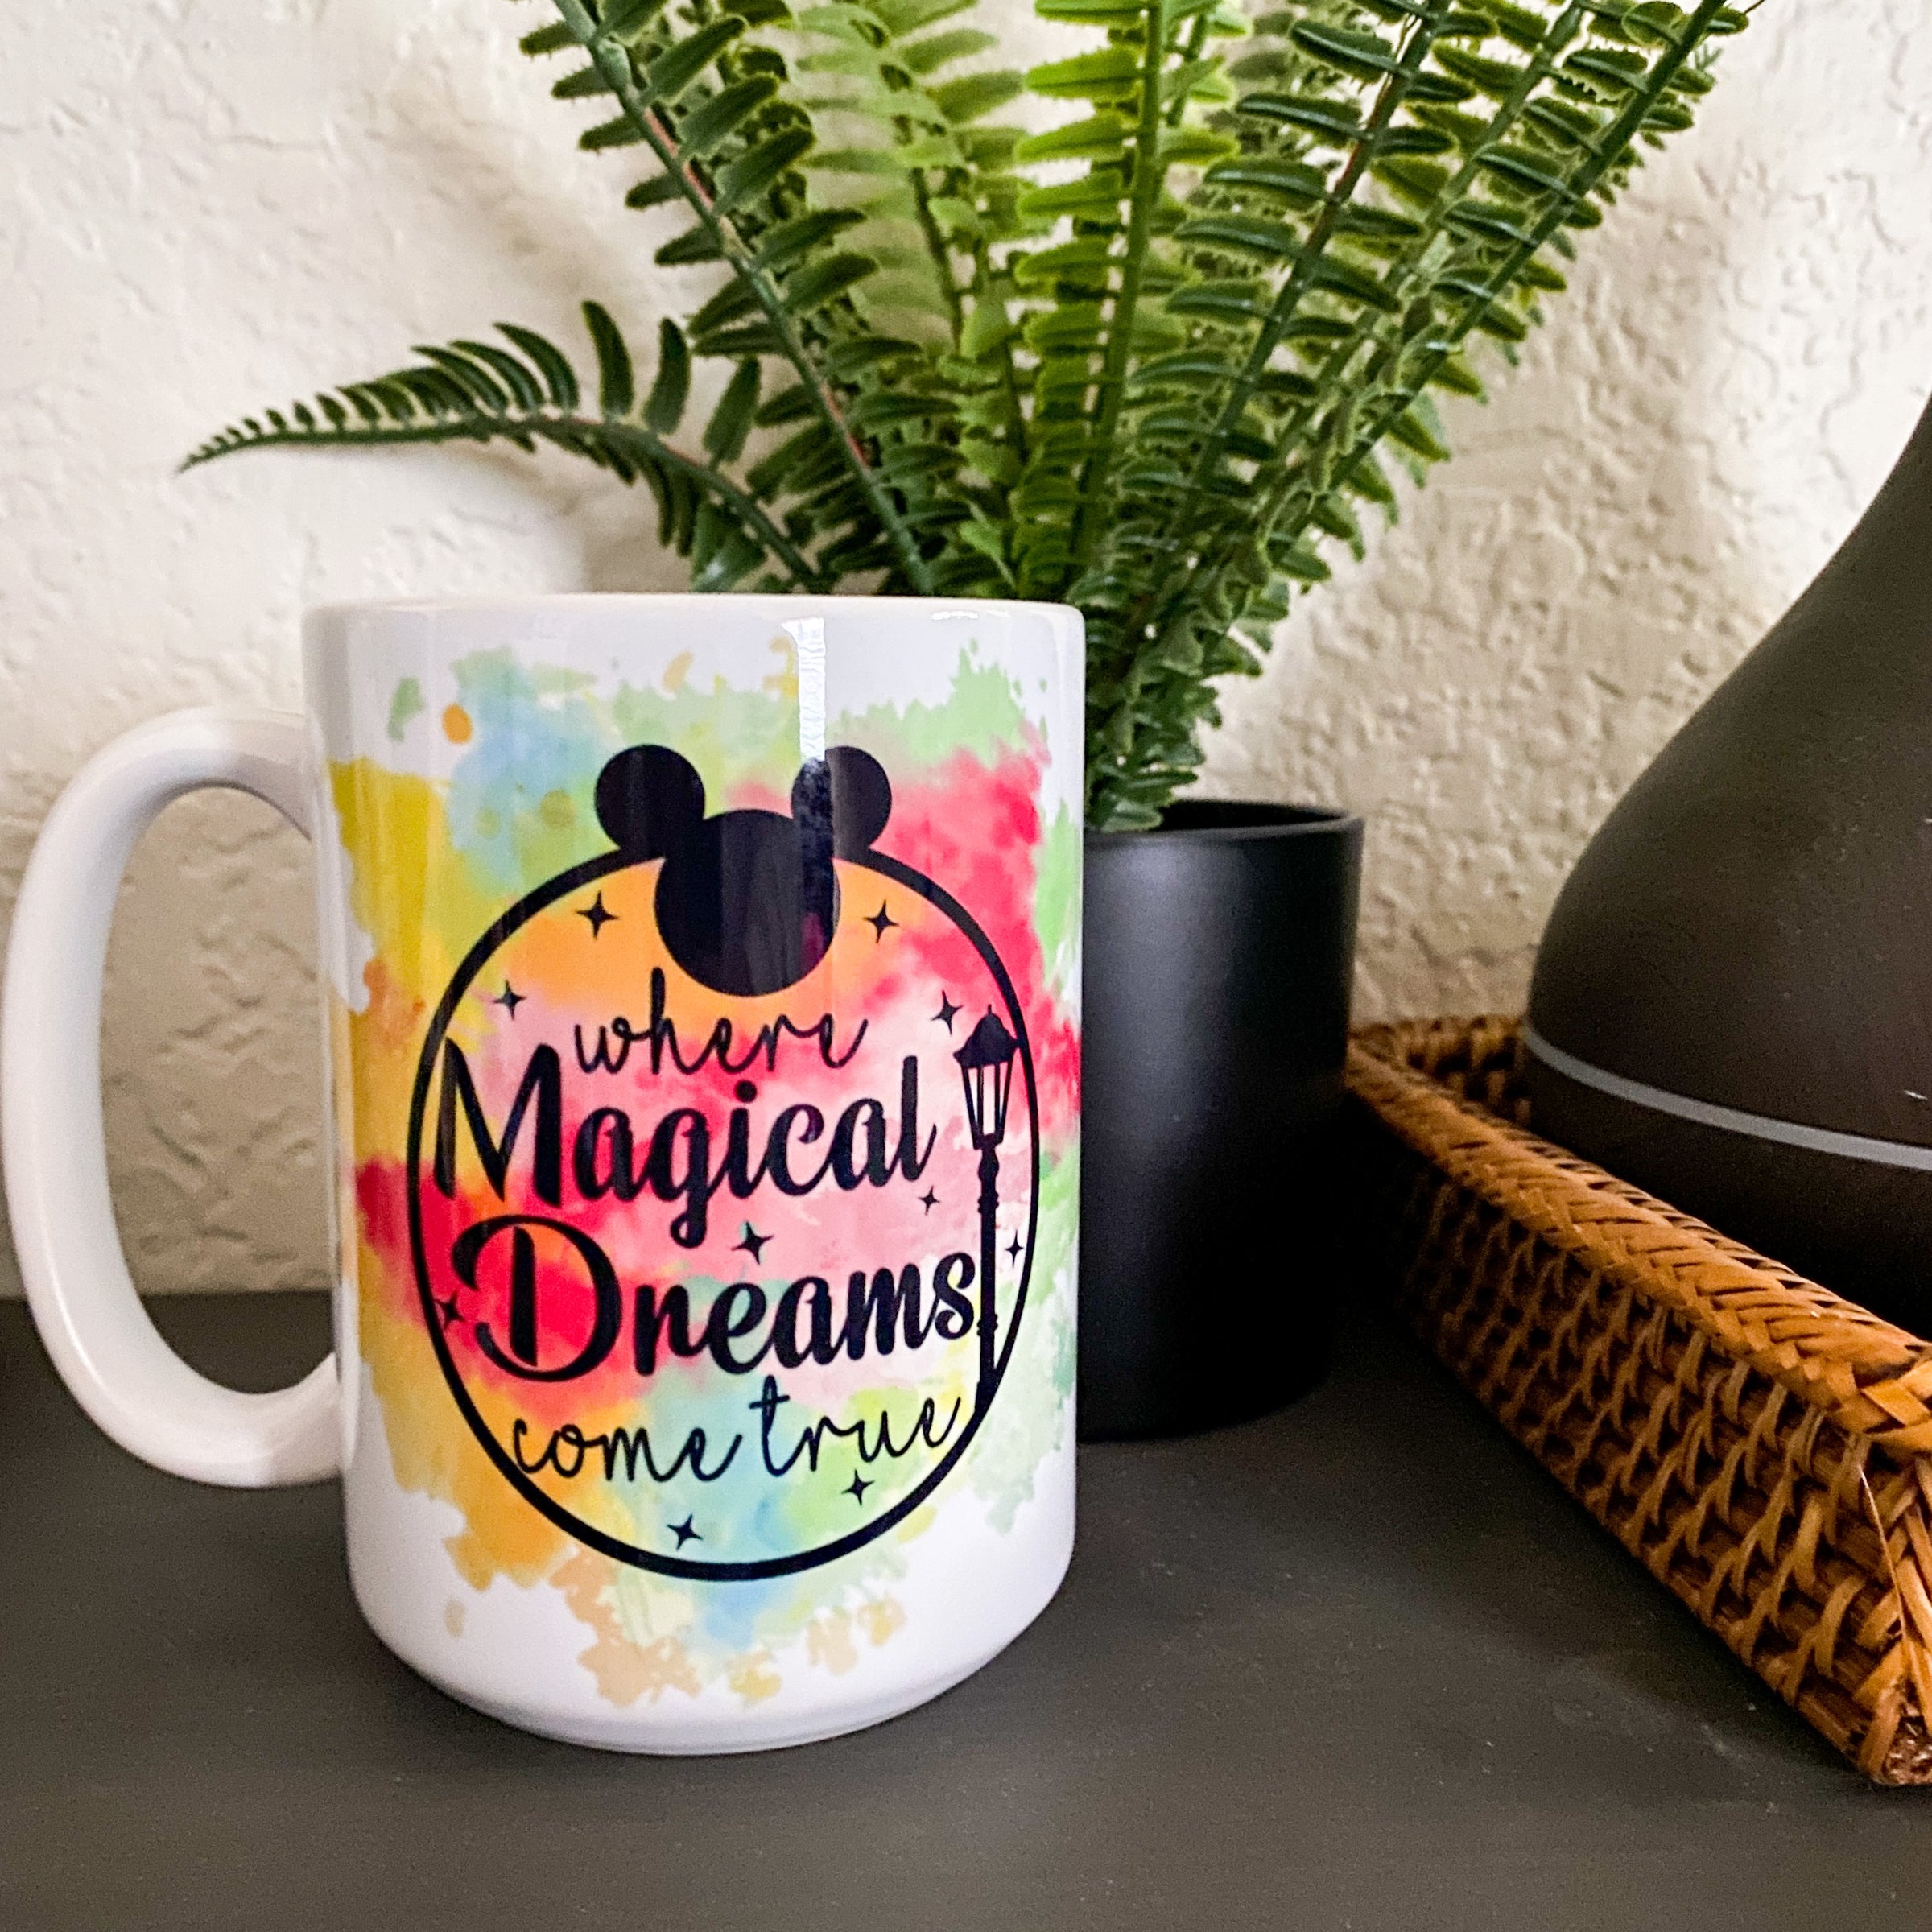 Where Magical Dreams Come True - 15oz Coffee/Tea Mug